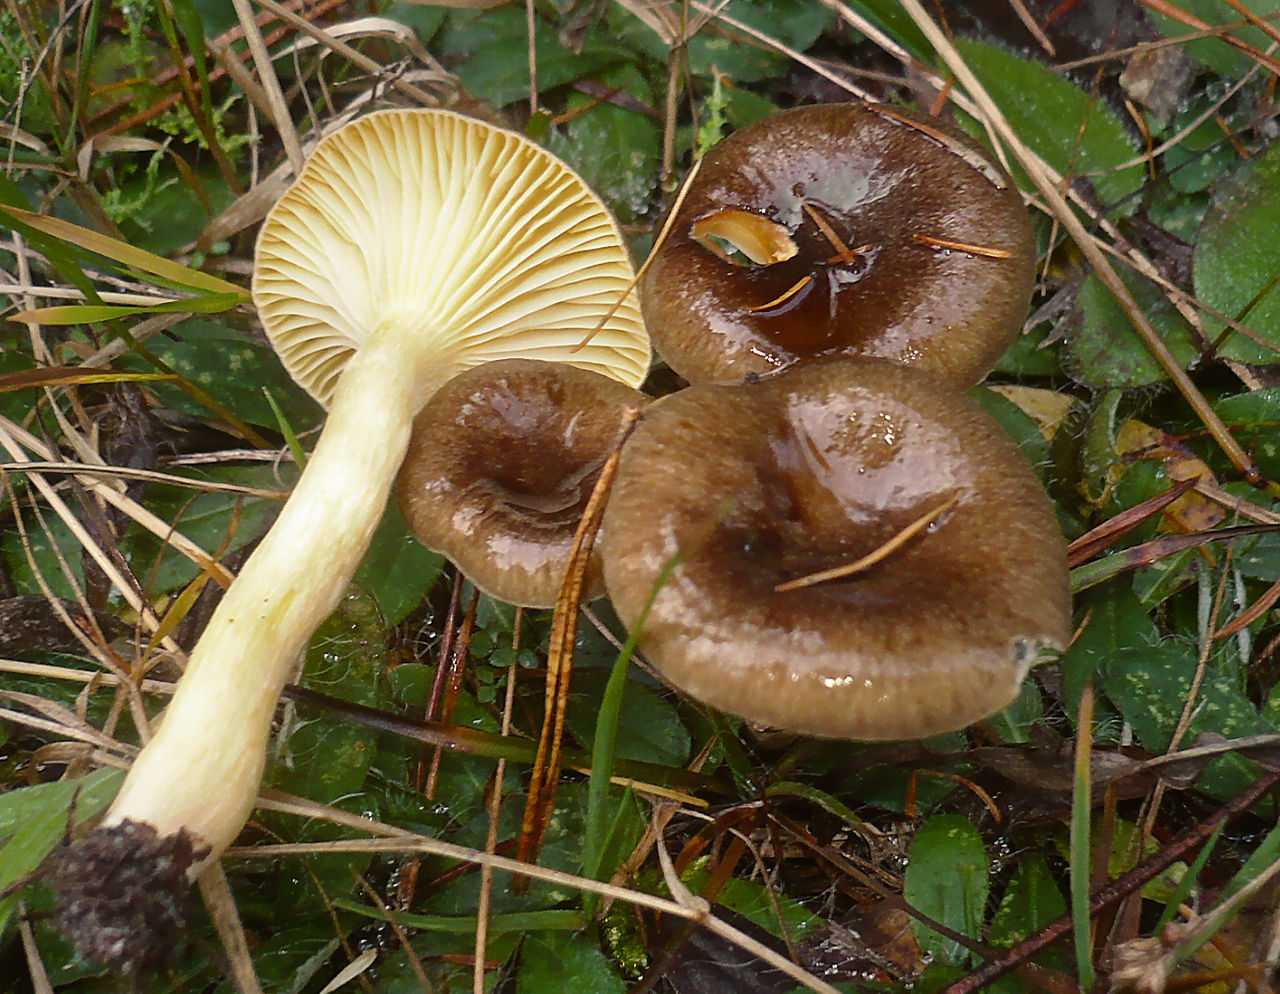 Съедобные грибы ленинградской области – фото и название